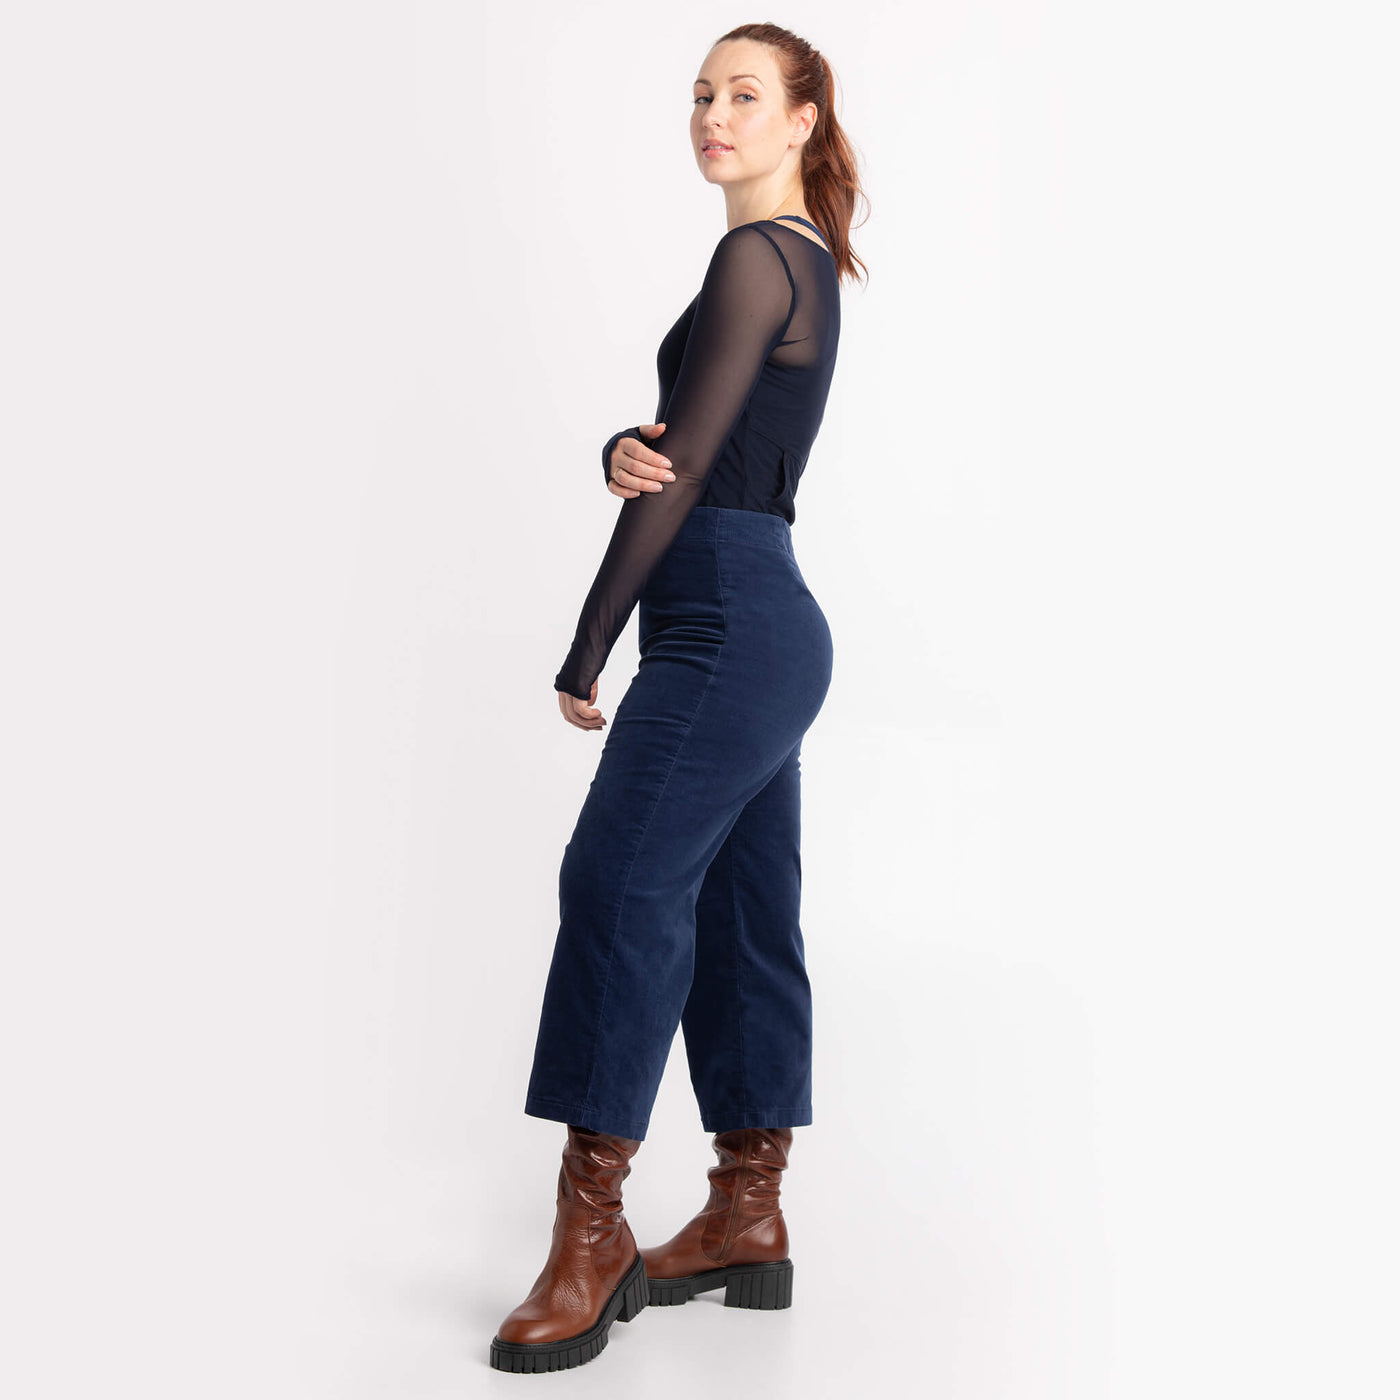 Lily Yoga Jeans marine - Chandail Kaelie diaphane marine: des créations Québécoises signées KSL 